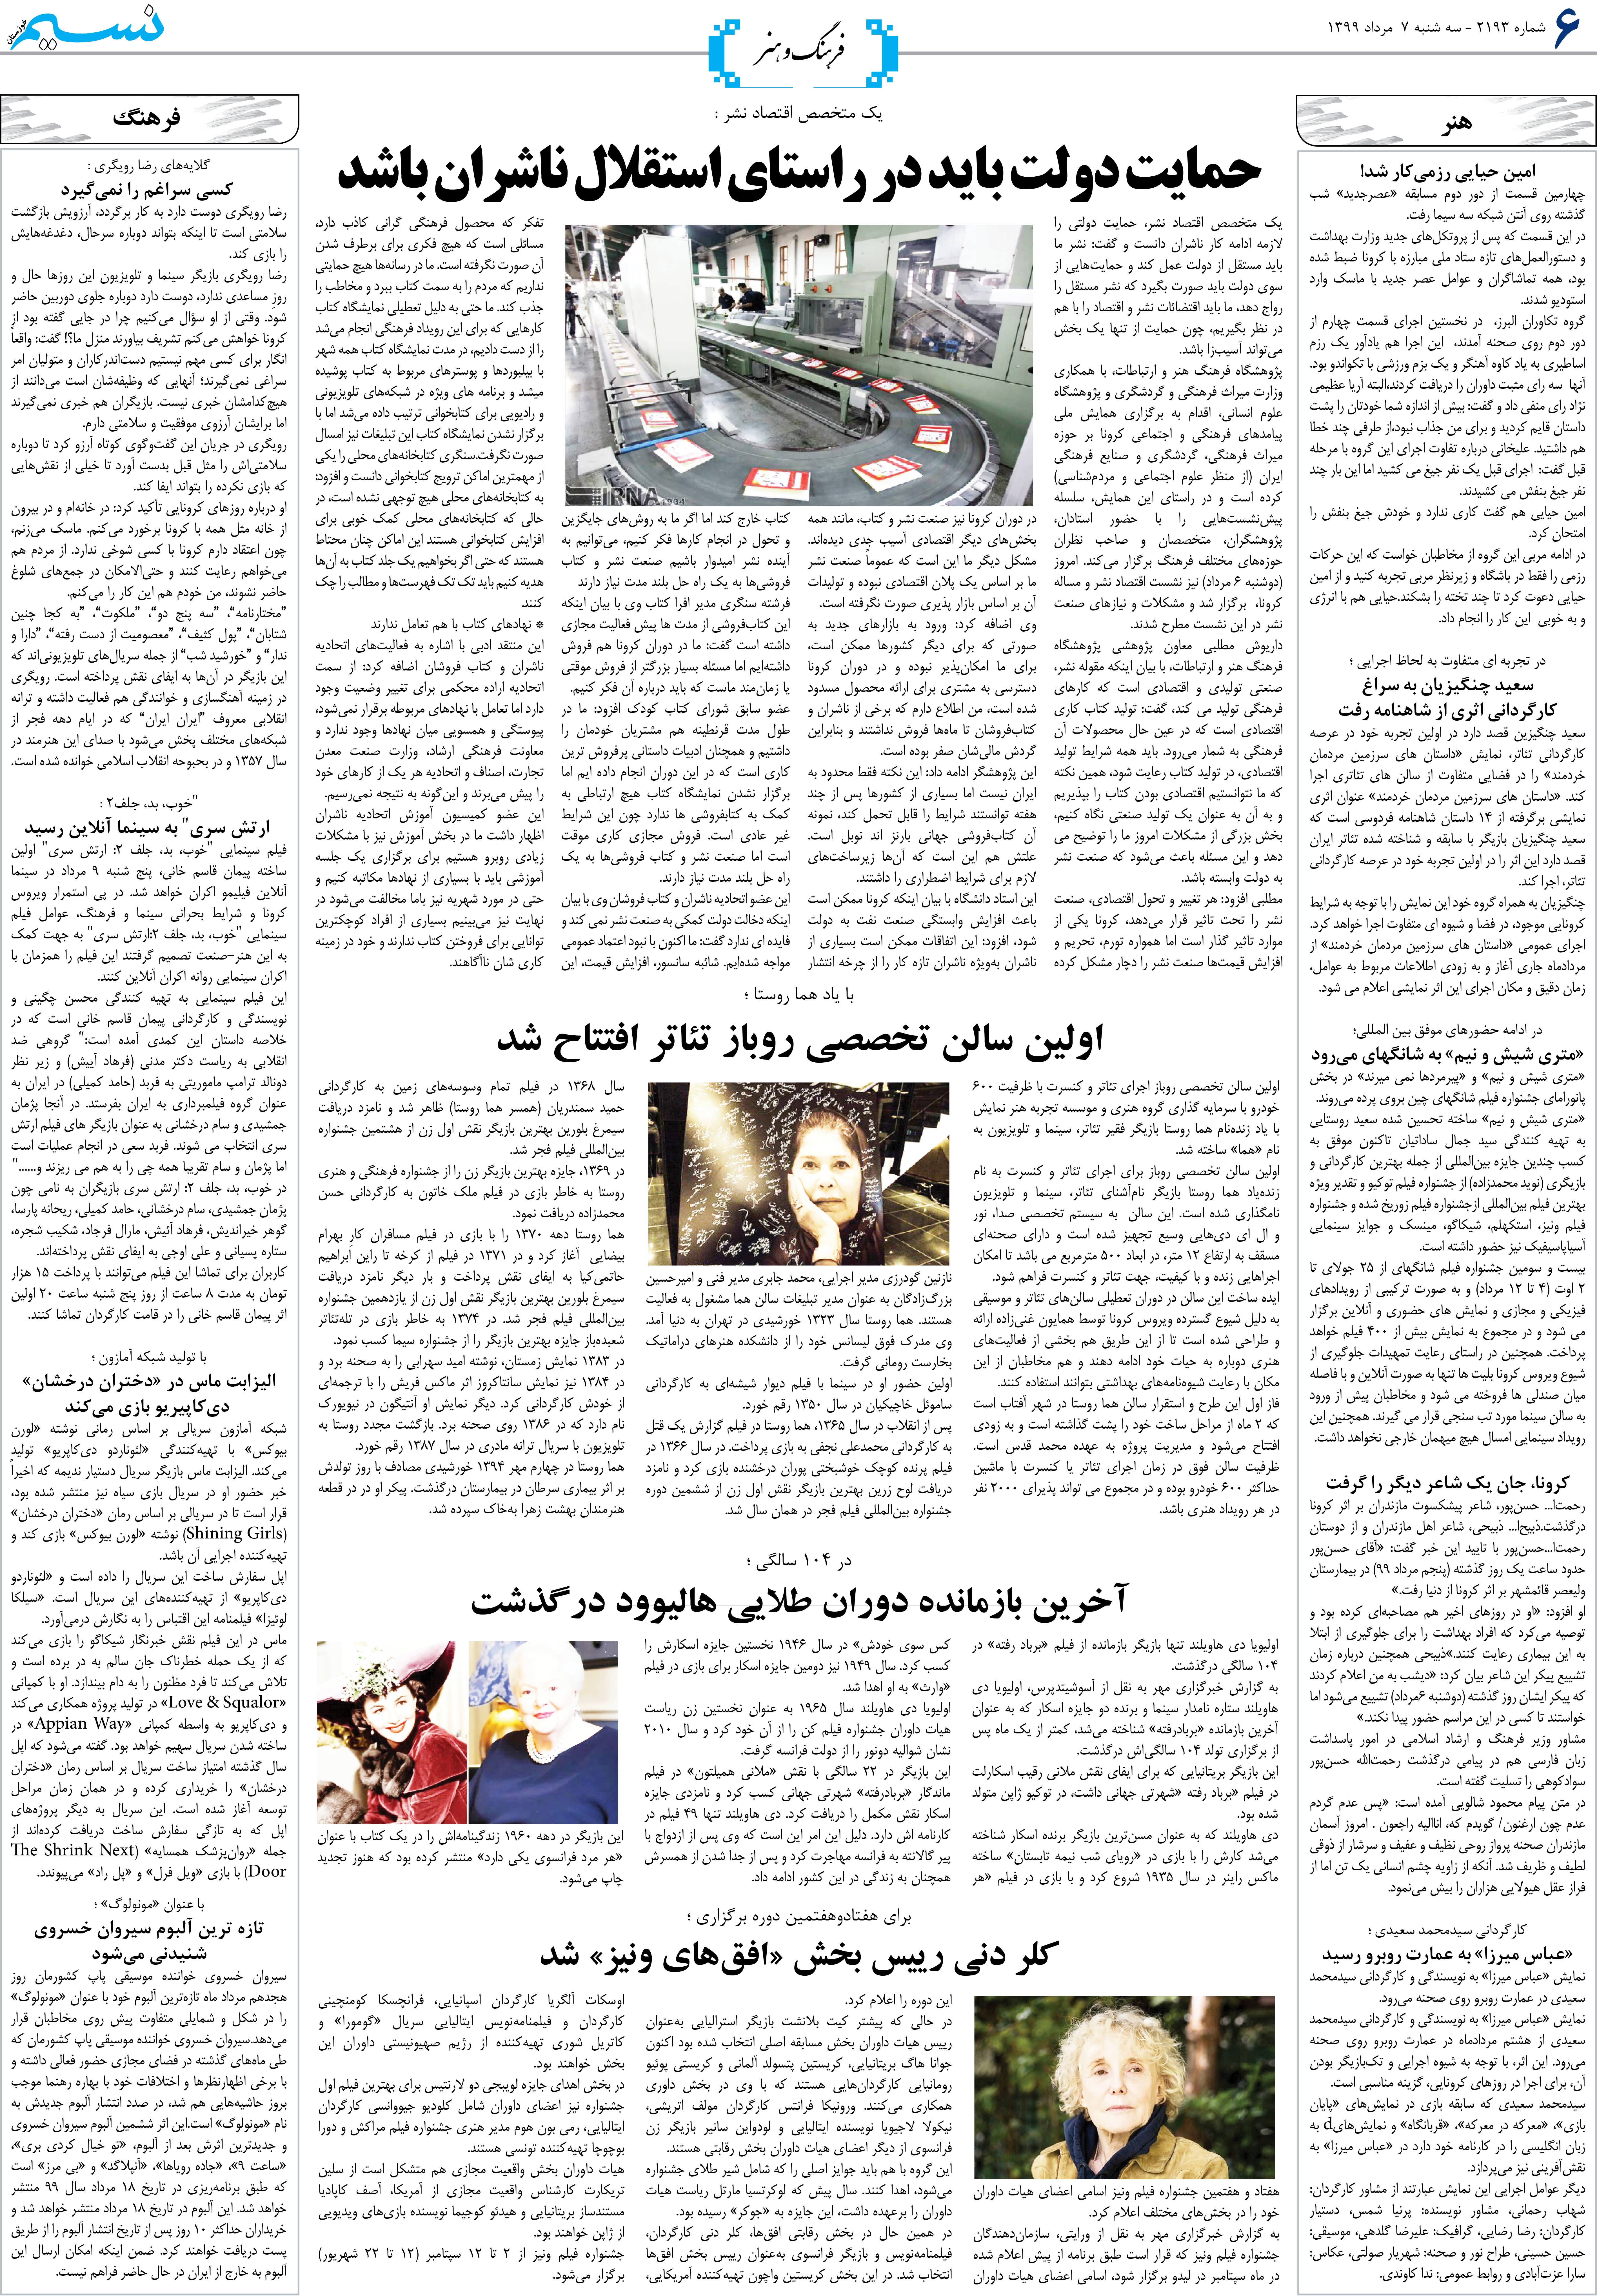 صفحه فرهنگ و هنر روزنامه نسیم شماره 2193